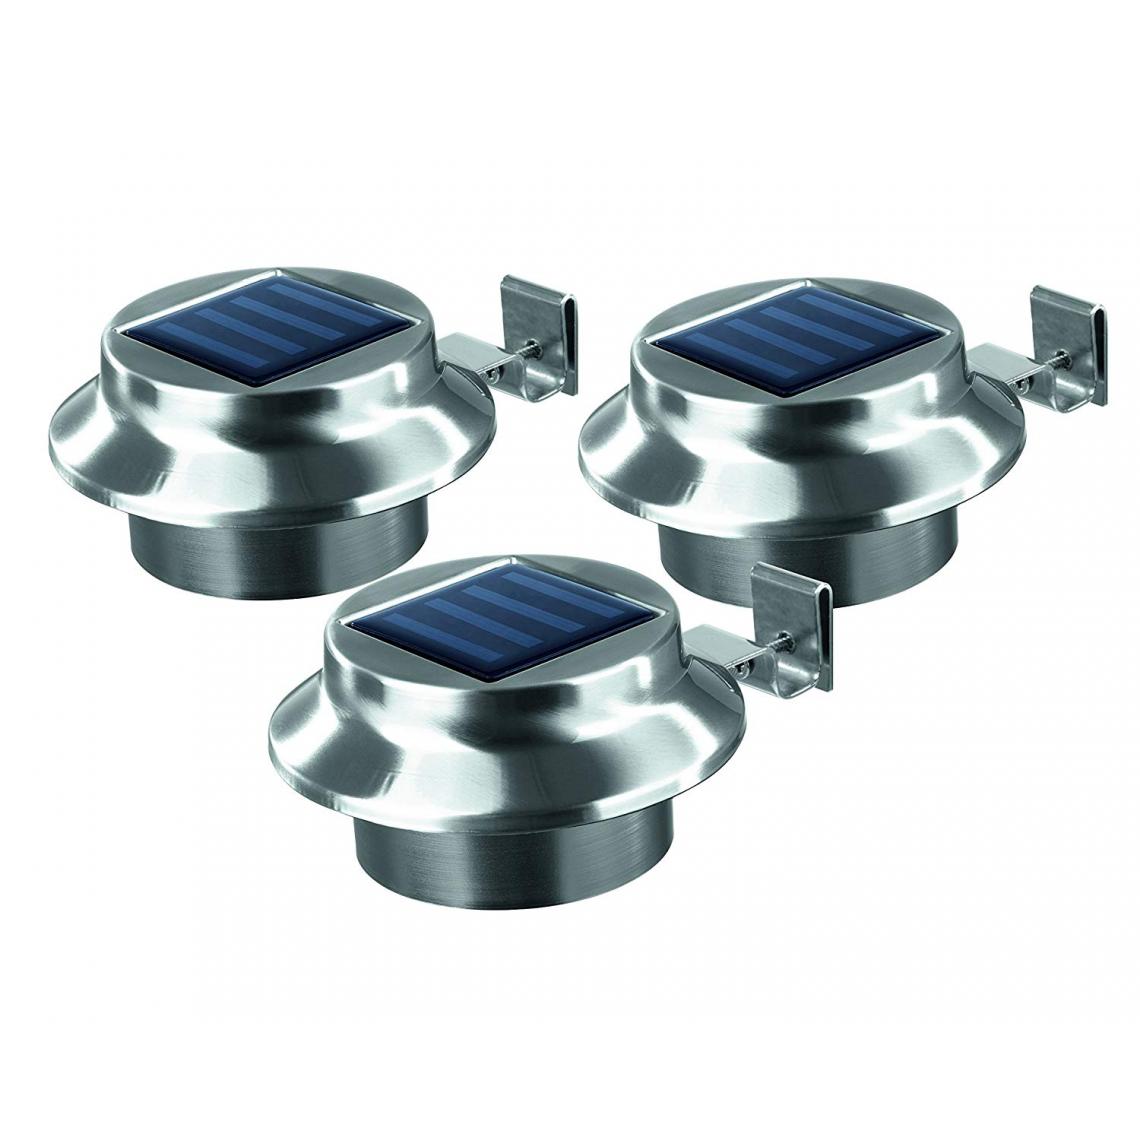 Inconnu - Lampe solaire de gouttière easymaxx 0612 LED set de 3 blanc chaud acier inoxydable (brossé) 3 pc(s) - Eclairage solaire